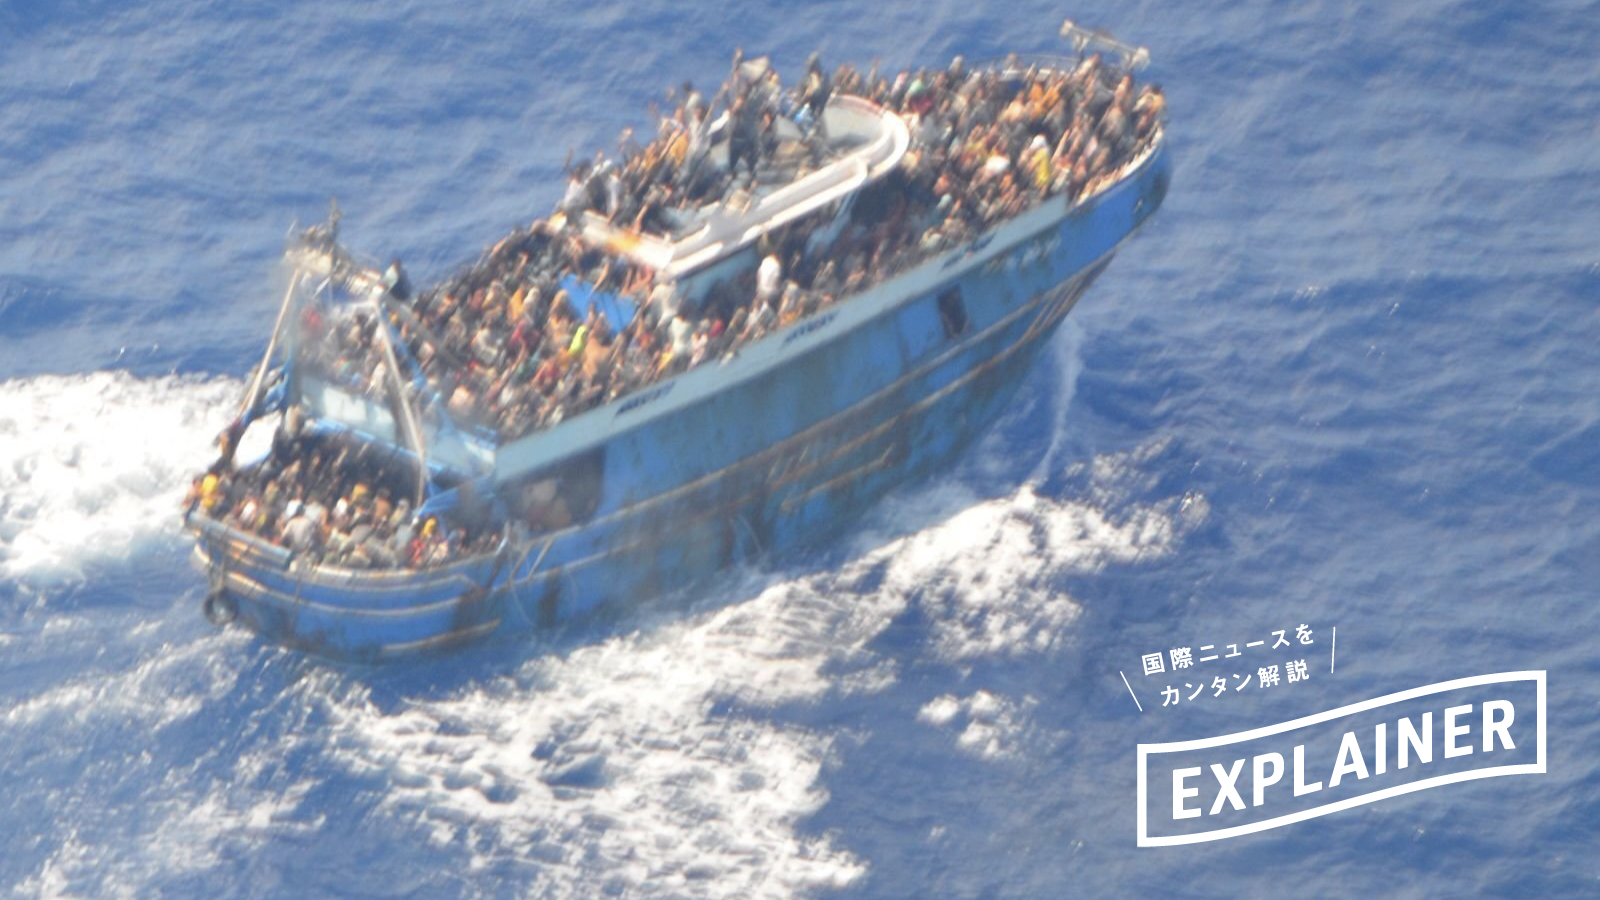 【解説】最低でも2万人以上の移民が命を落としてきた危険な「地中海中部ルート」とは | 2015年以来最悪の沈没事故で懸念がふたたび高まる